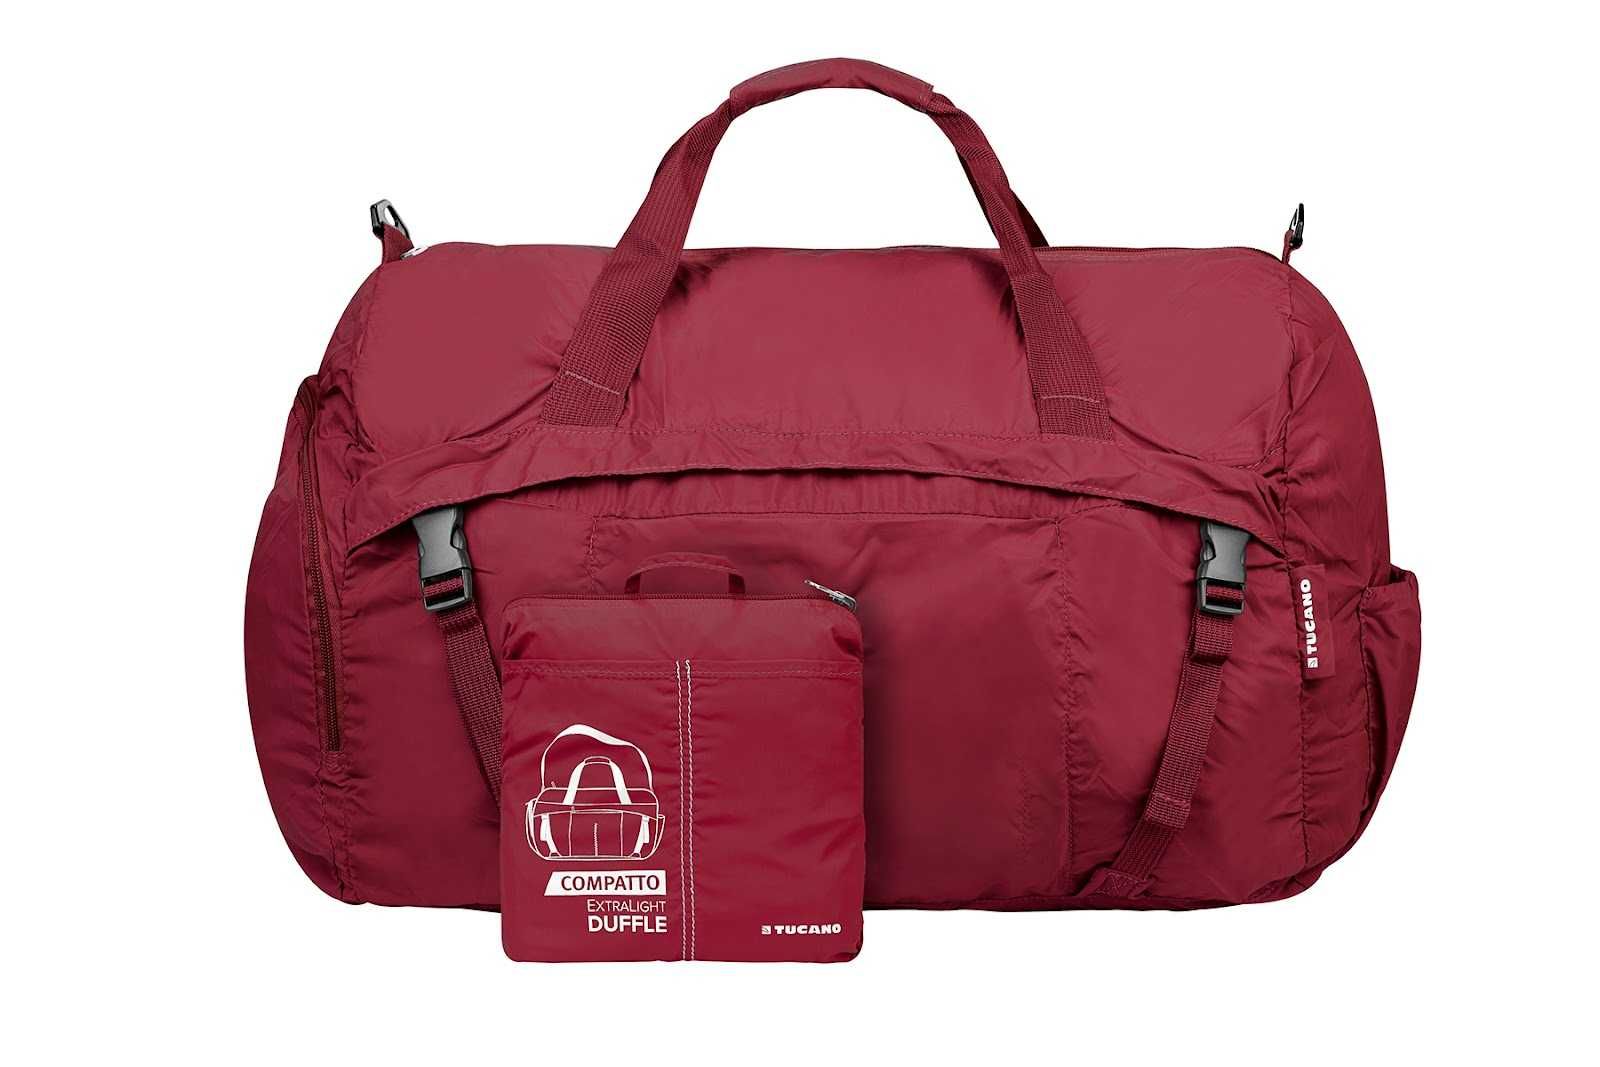 Розкладна легка дорожня сумка Tucano Compatto XL Duffle 45L,-20%